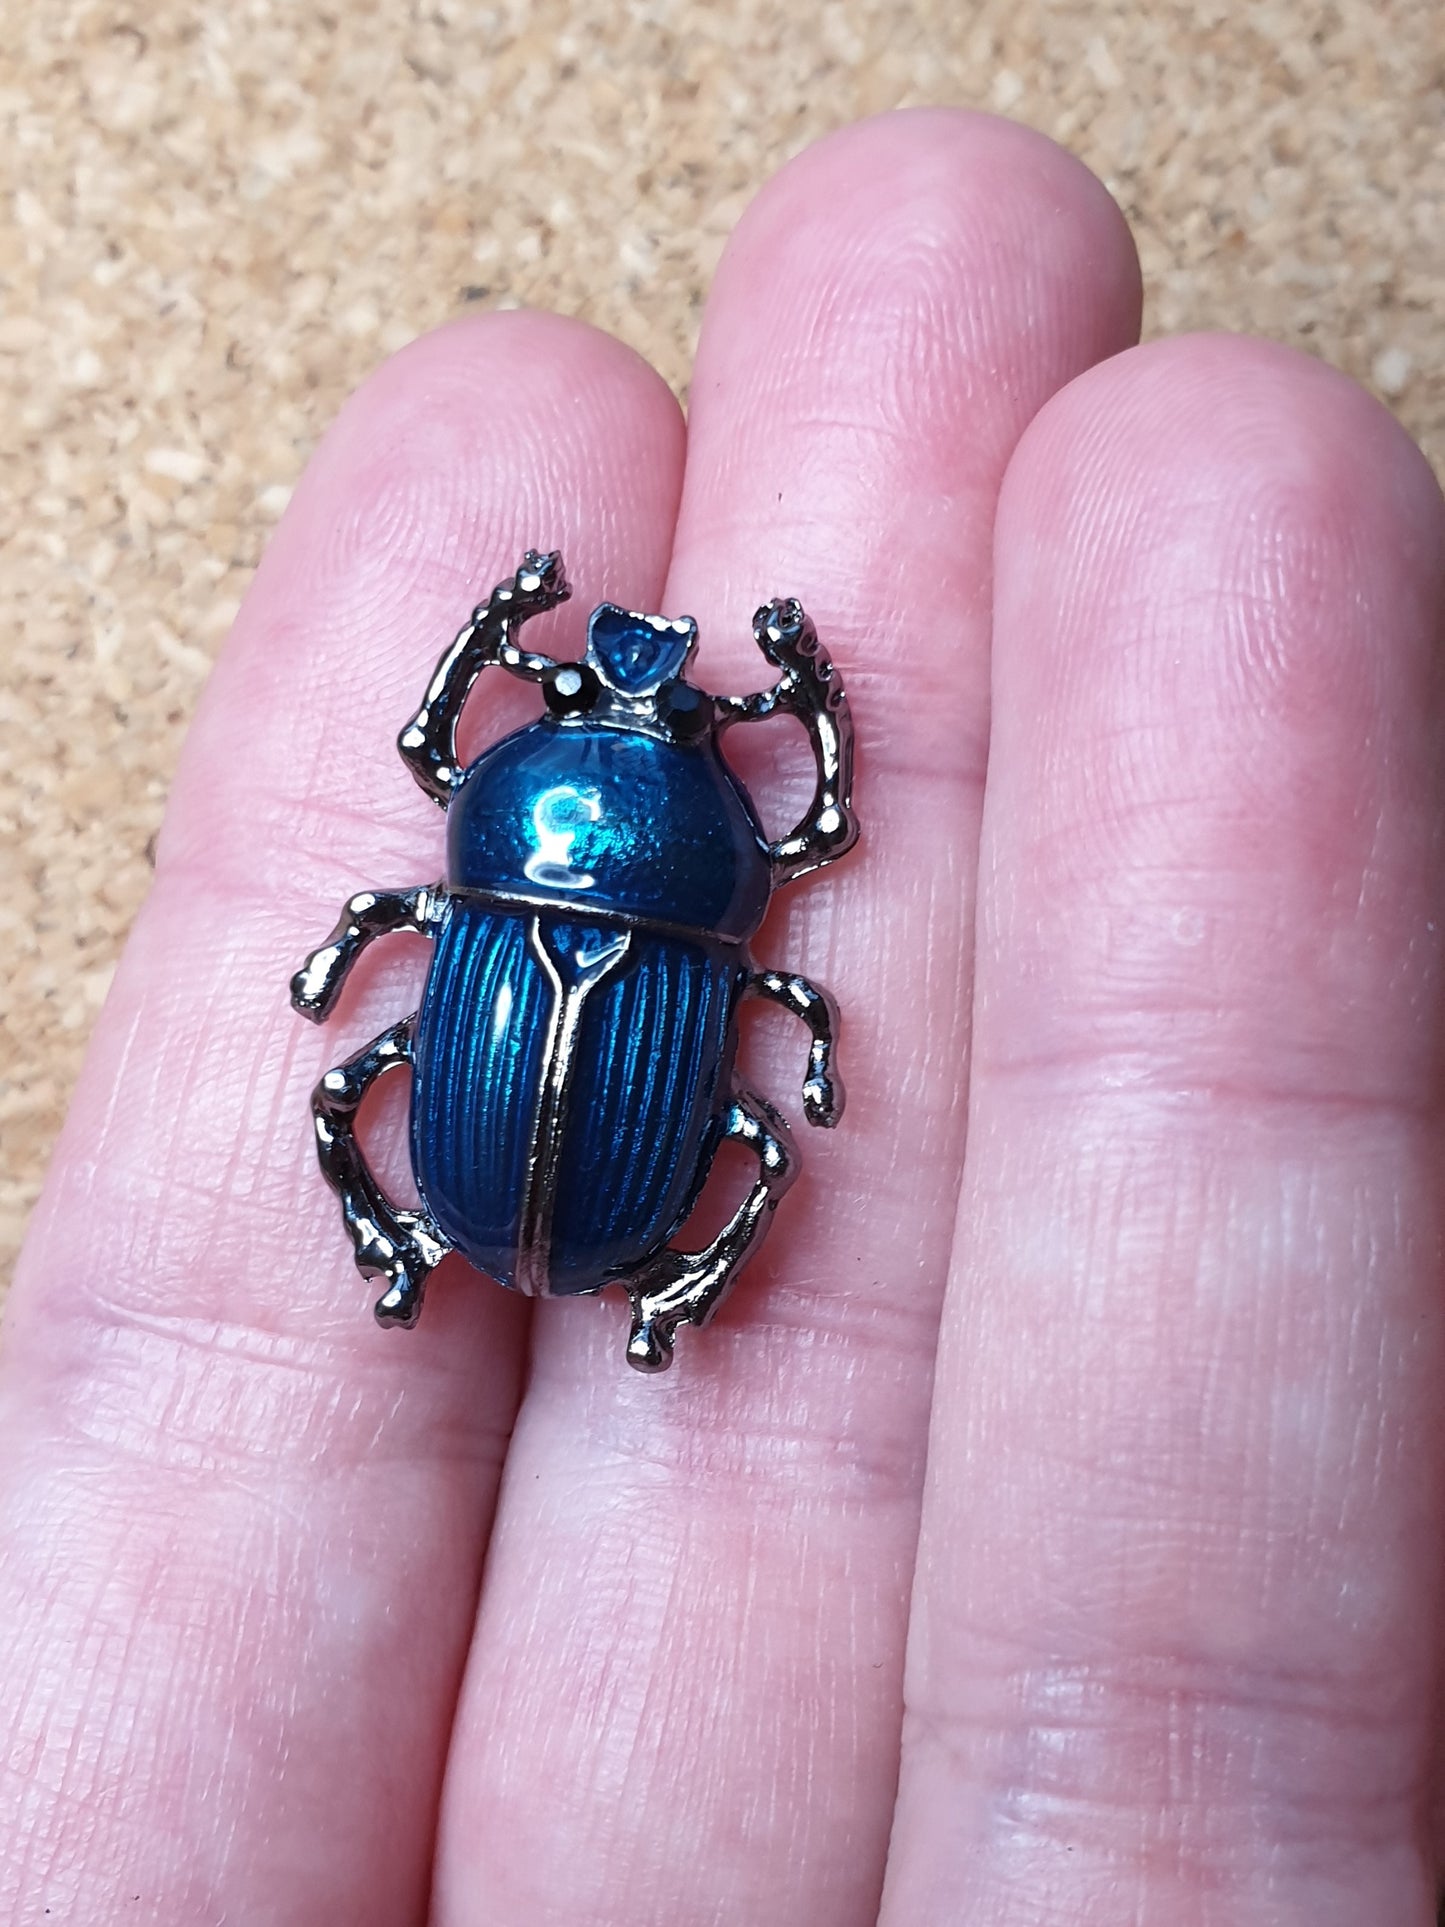 Dung Beetle Brooch - Light Blue